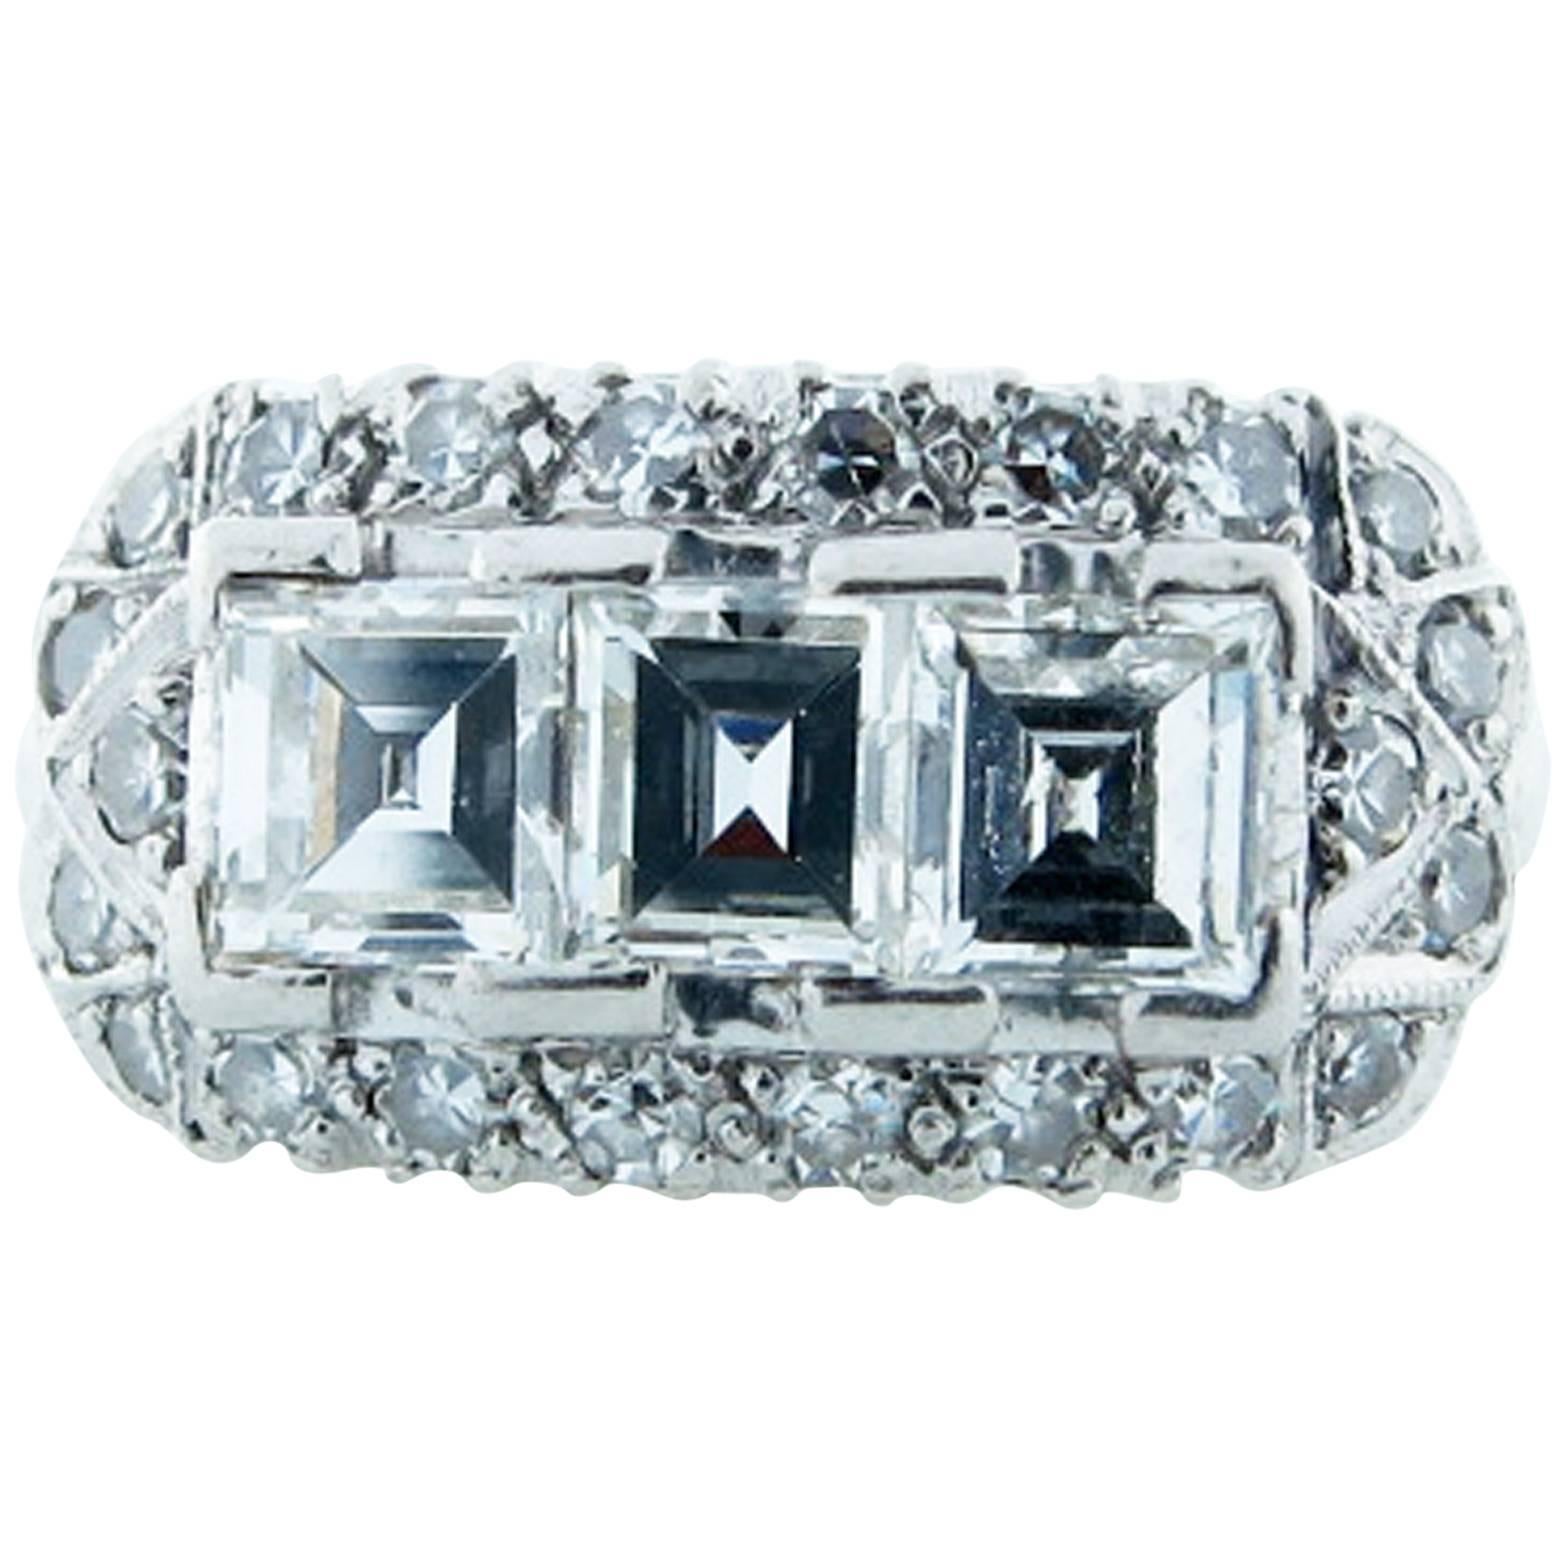  Exquisite Art Deco Three Stone Emerald Cut Diamond Platinum Ring For Sale